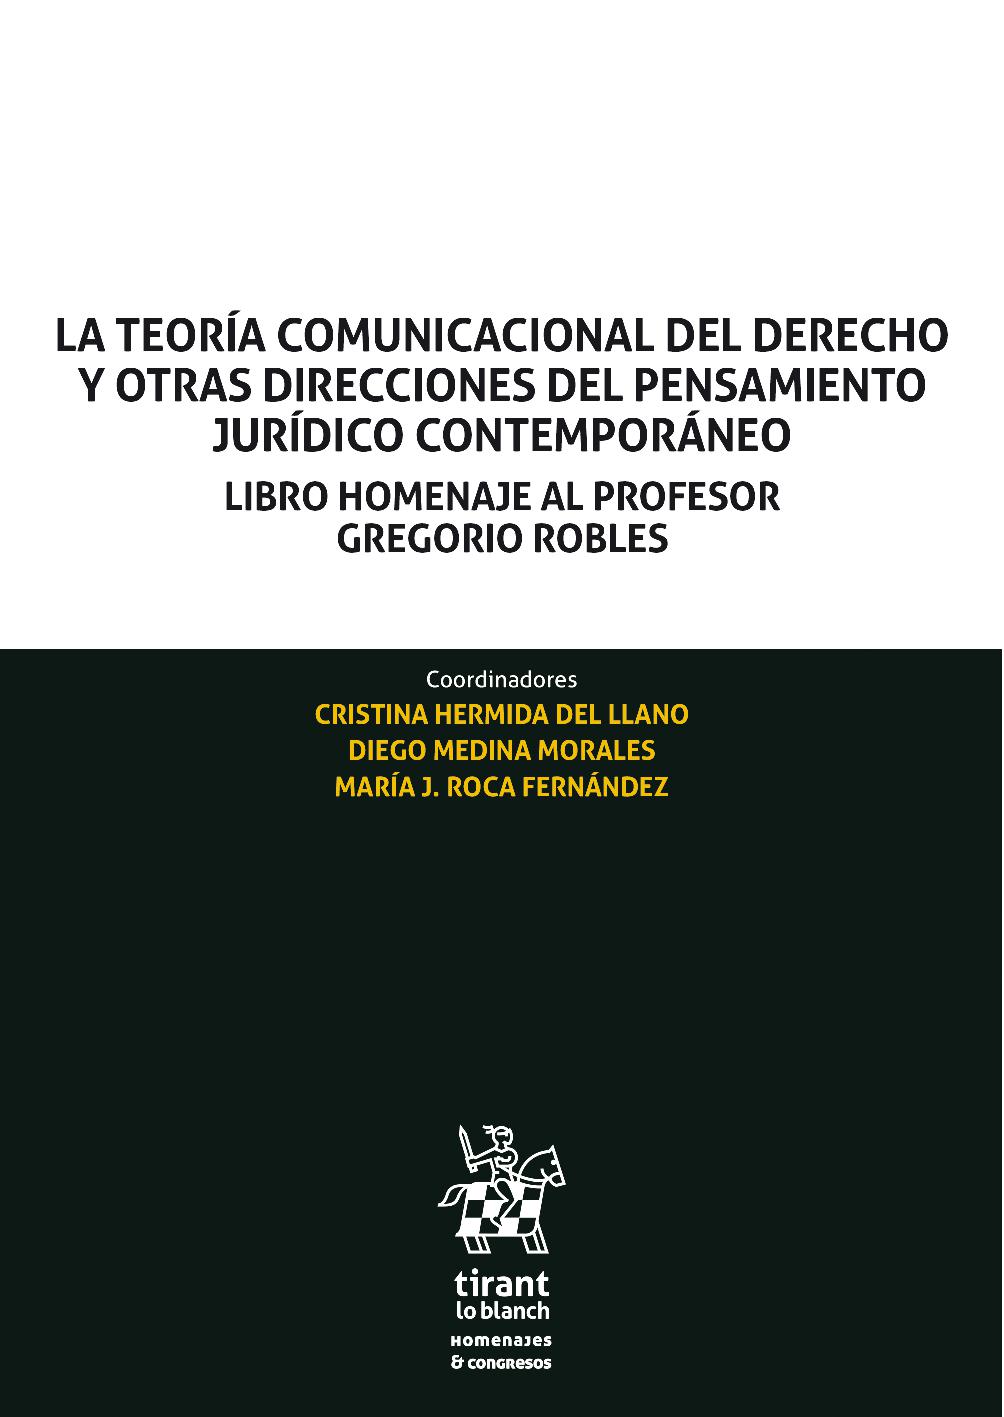 Imagen de portada del libro La teoría comunicacional del derecho y otras direcciones del pensamiento jurídico contemporáneo